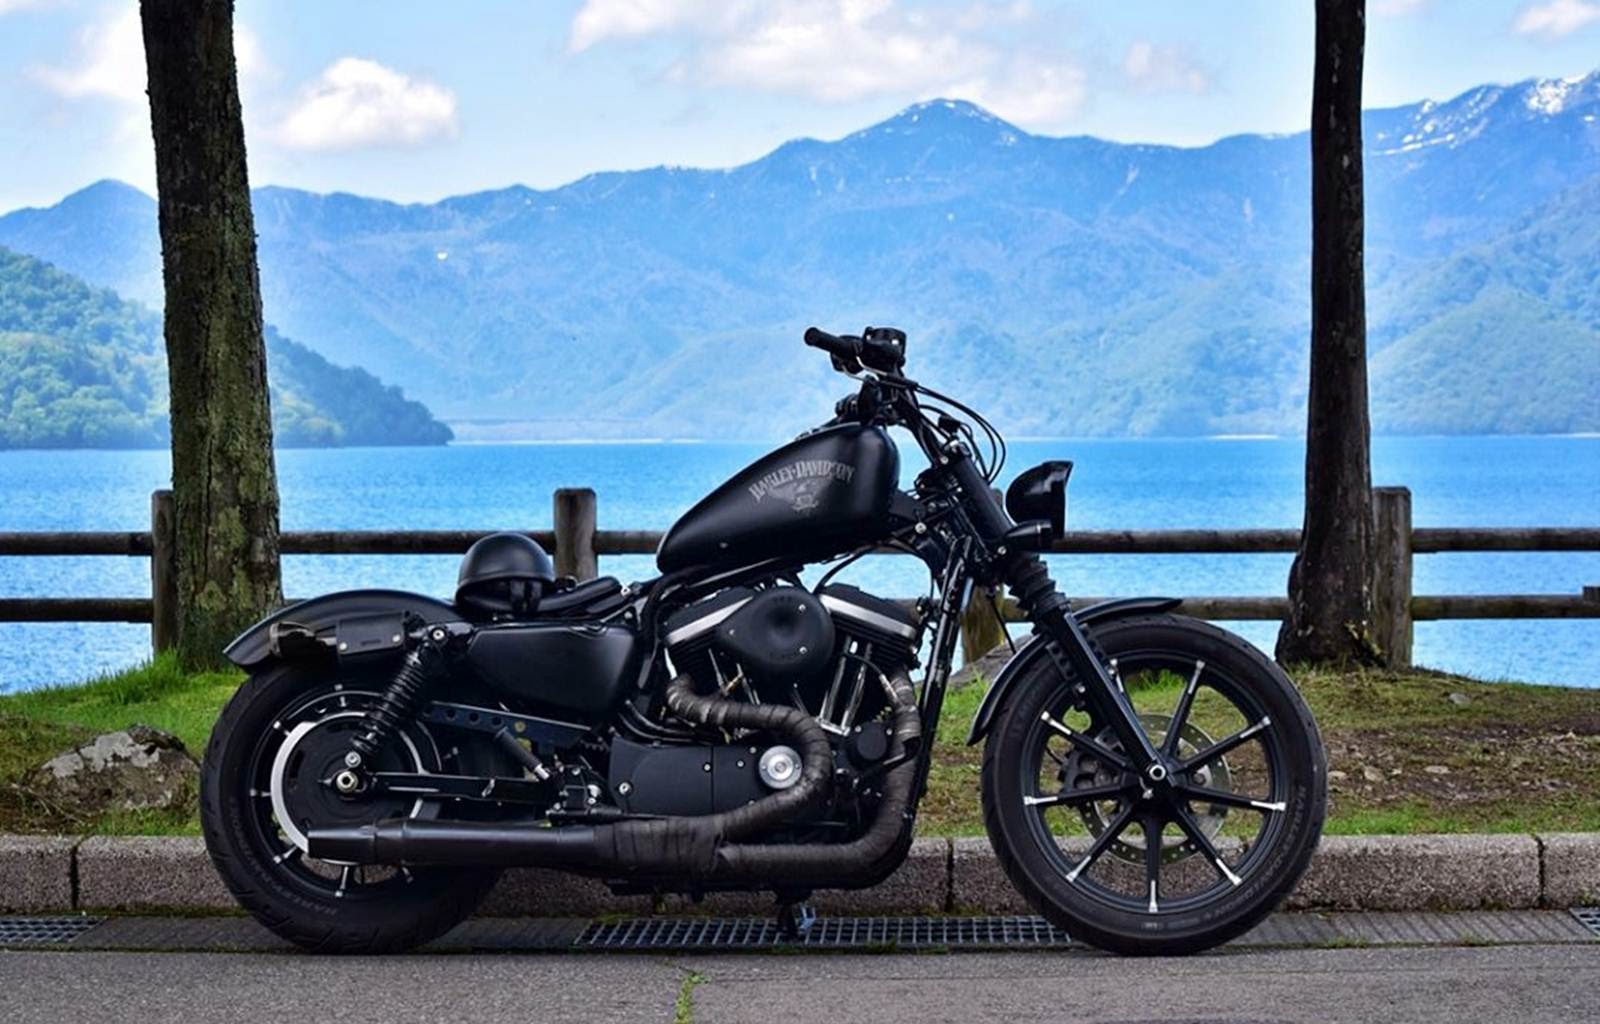 10 Gambar Wallpaper Motor Harley Davidson Ukuran 1600x1024 Terbaru Dibawah